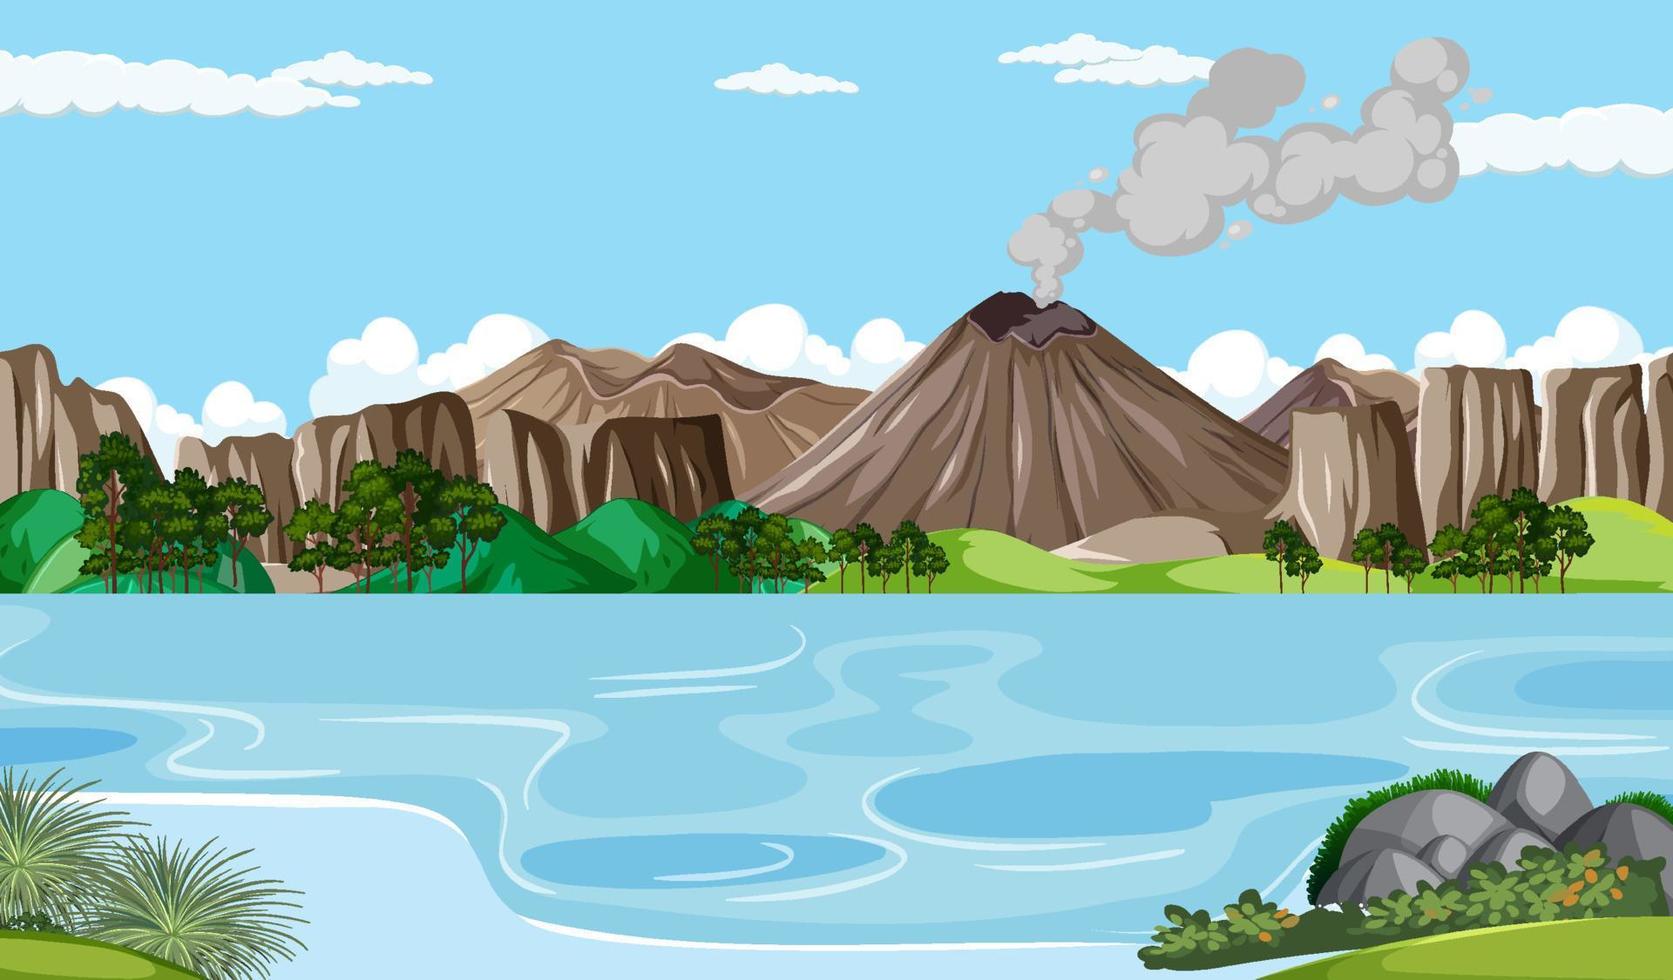 Prehistoric forest scene background vector